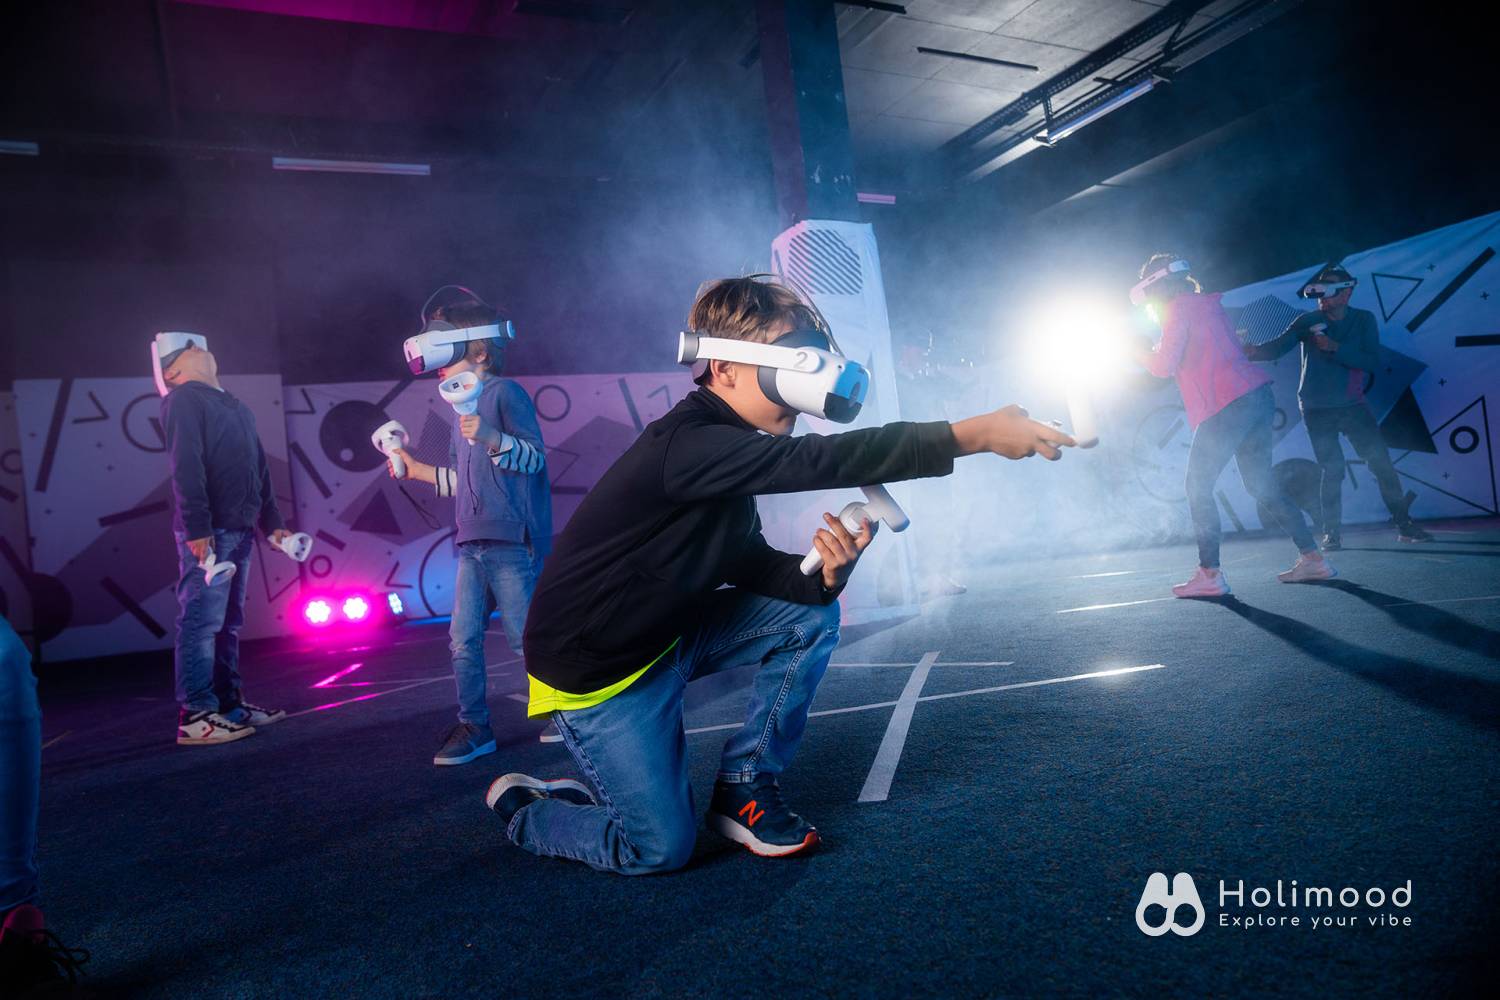 V-Owl Station VR Party 虛擬實境體驗站 【VR體驗】90分鐘特選VR故事遊戲 (送4D動感太空艙體驗) 9